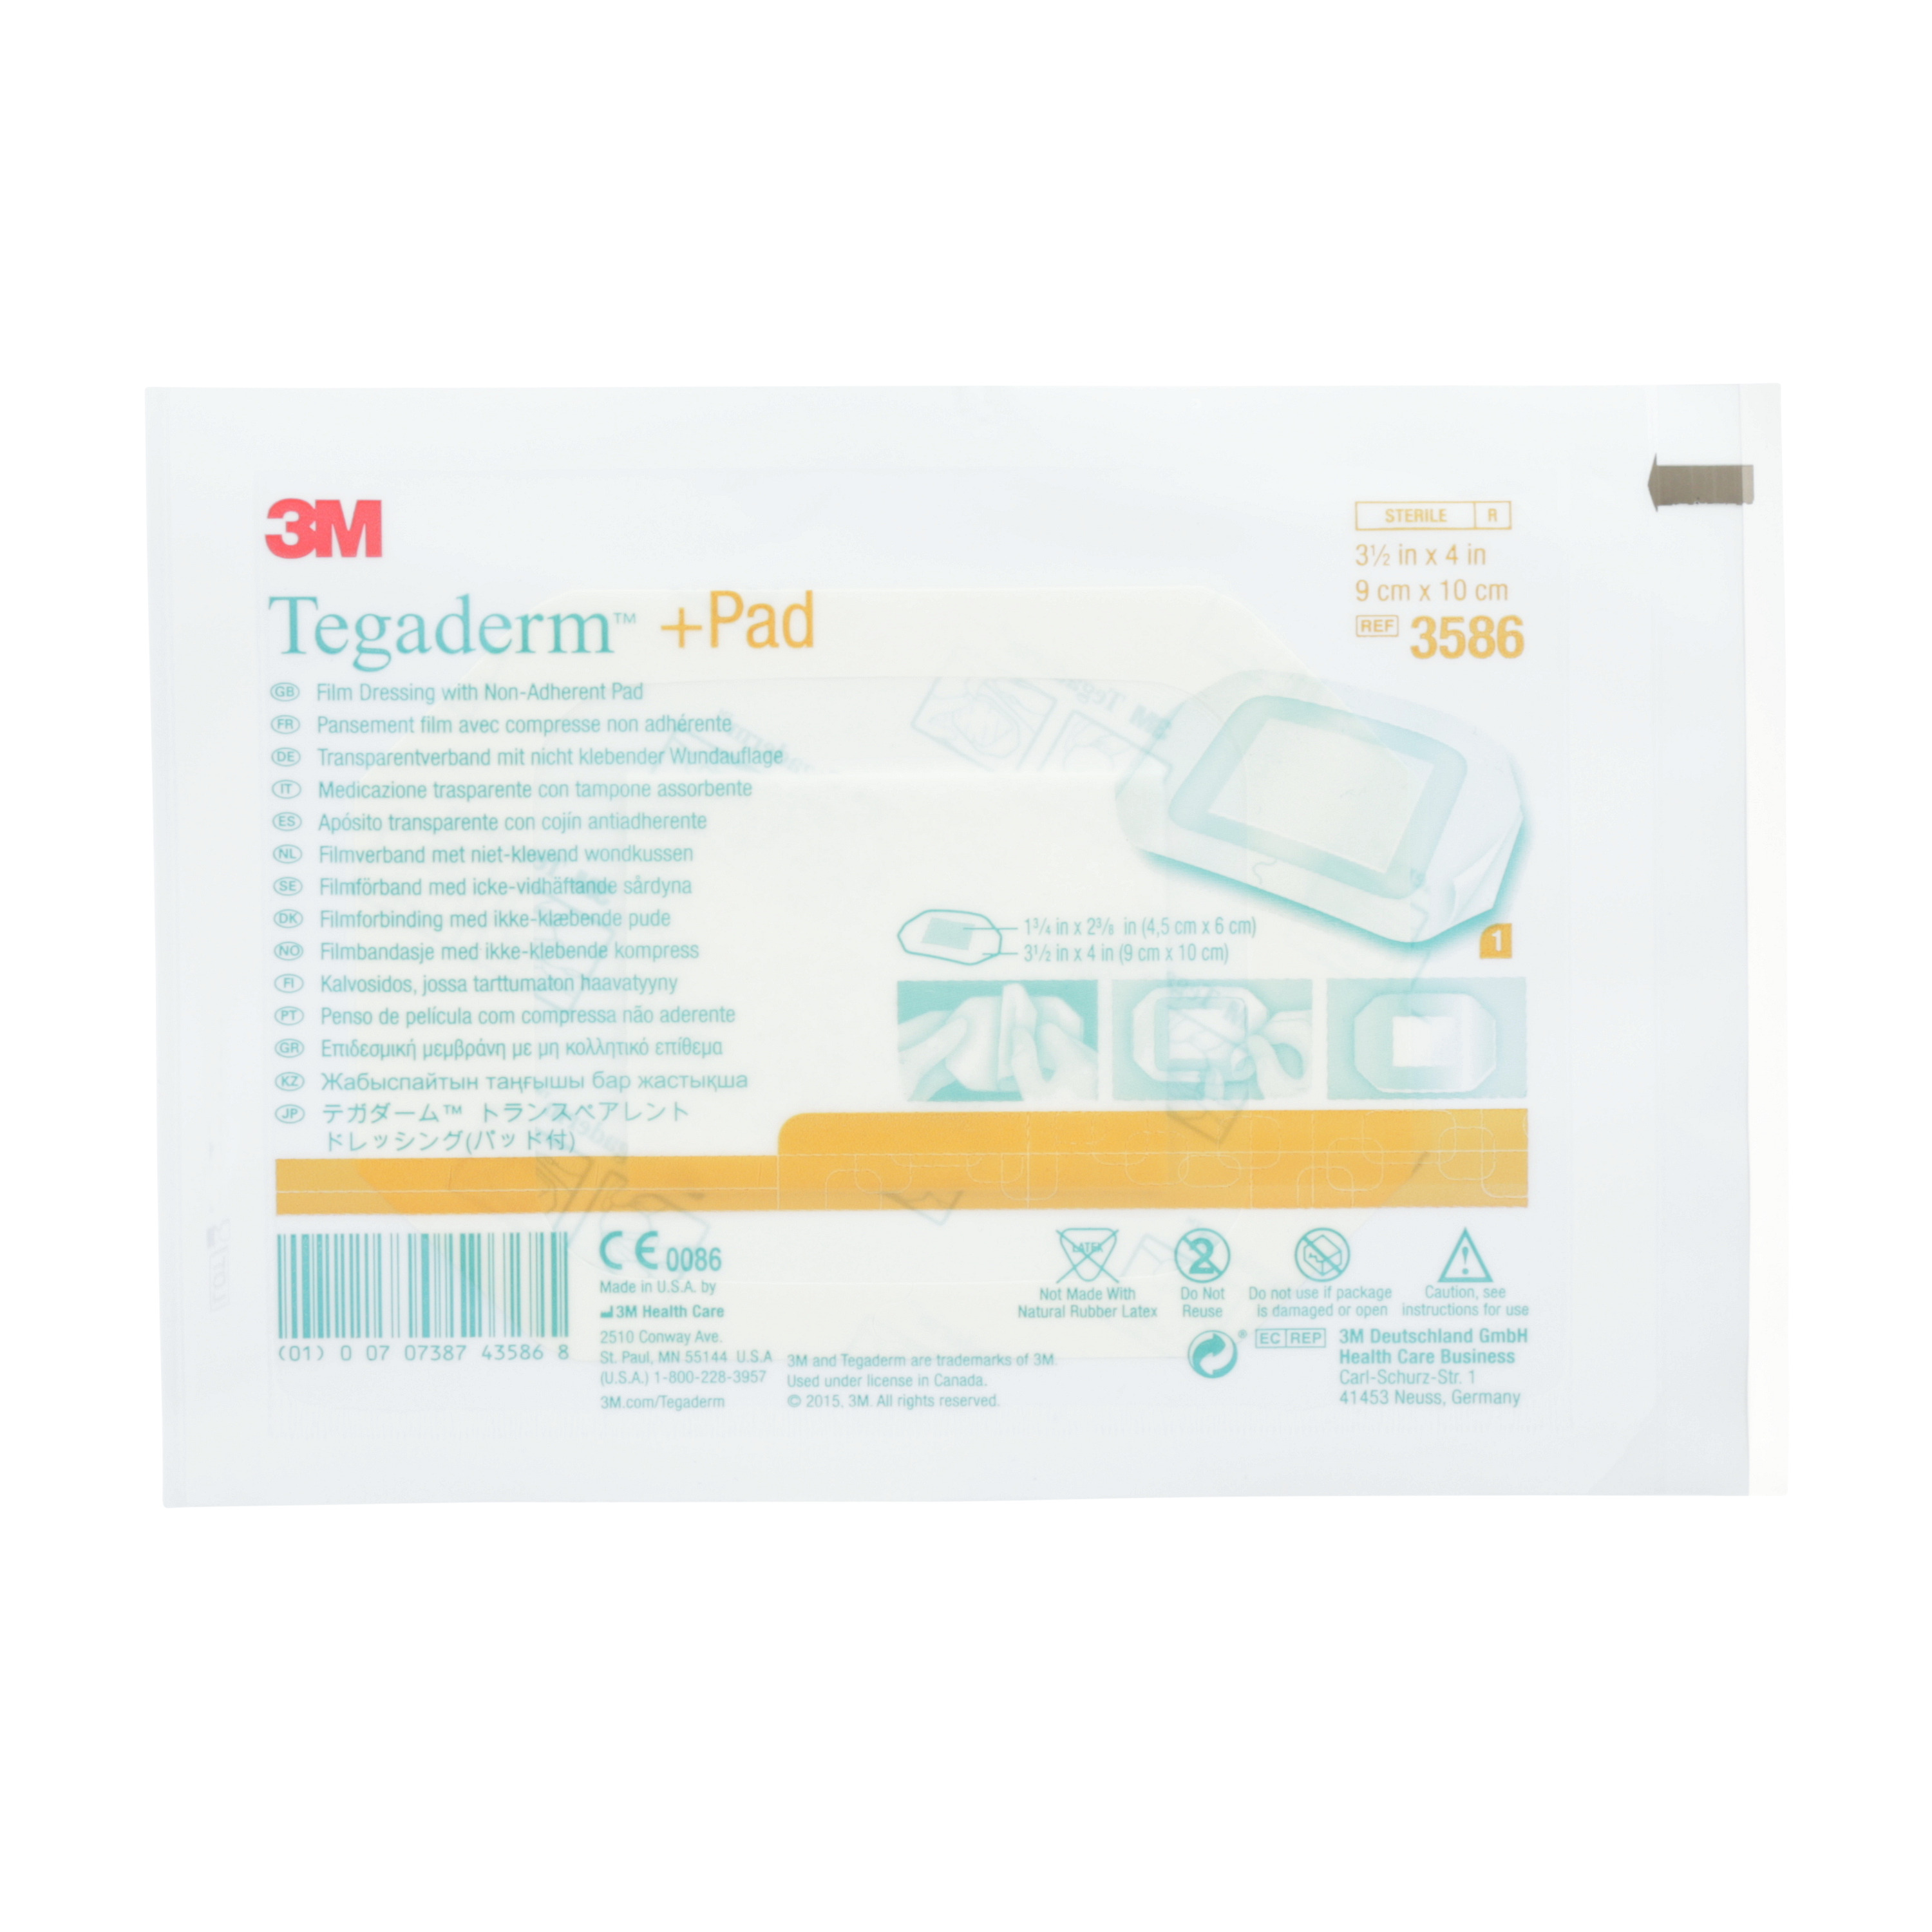 3M™ Tegaderm™ + Pad Transparentverband mit nicht klebender Wundauflage, 3586, 4,5 cm x 6 cm, 25 Stück/Packung